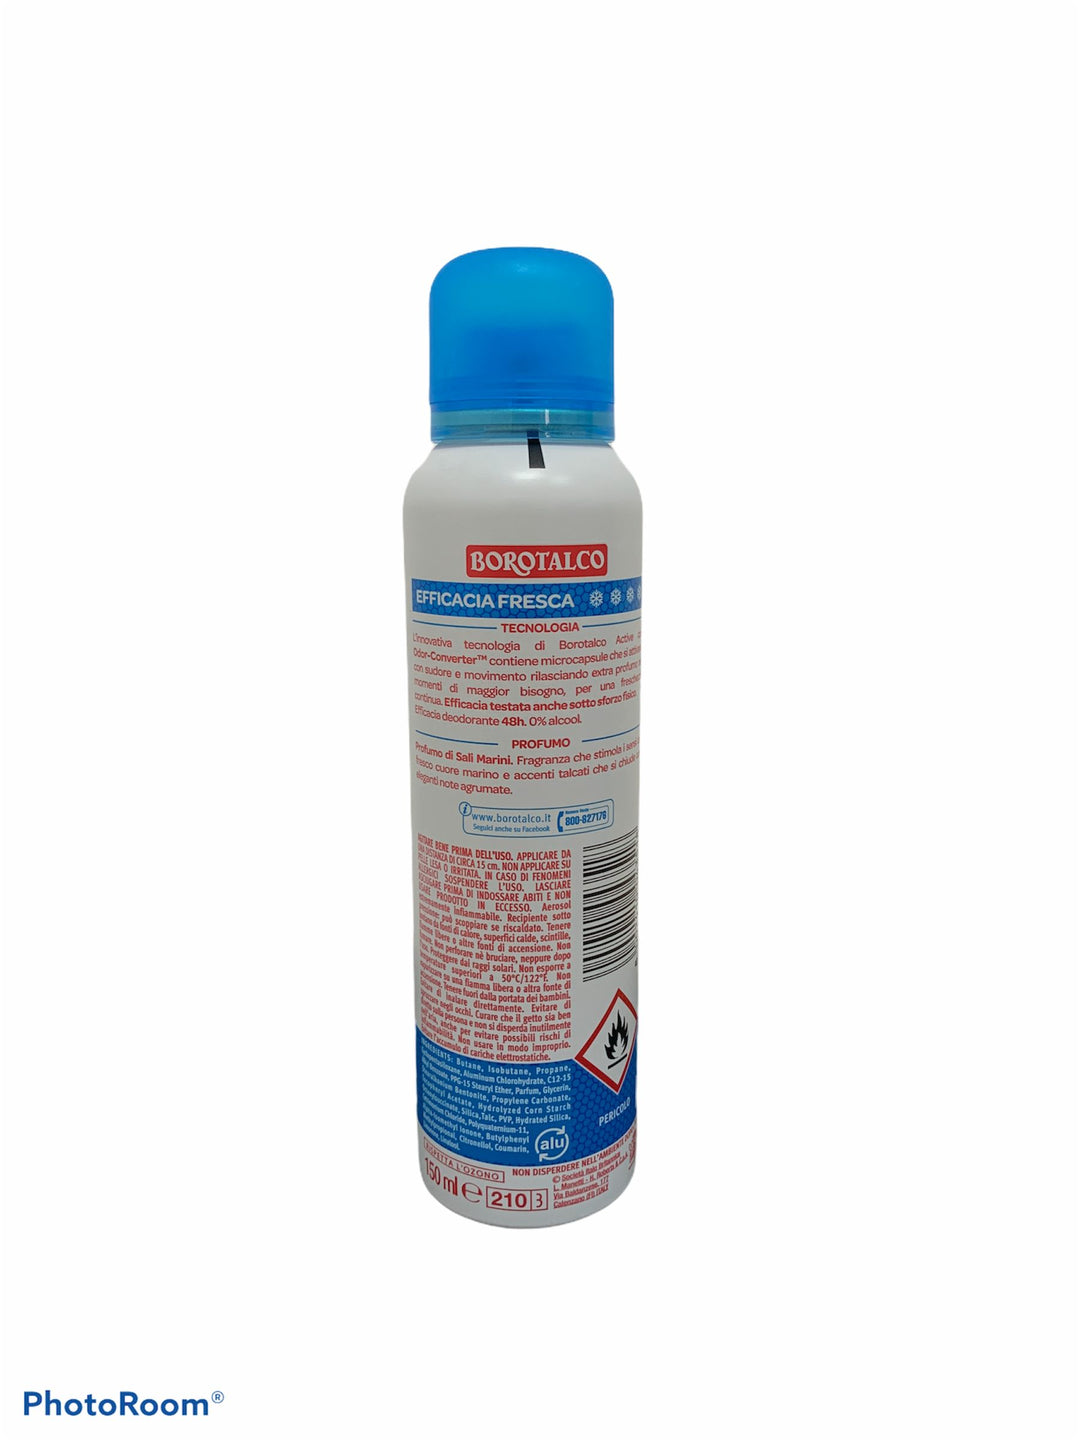 Borotalco deodorante spray active sali marini 150 ml